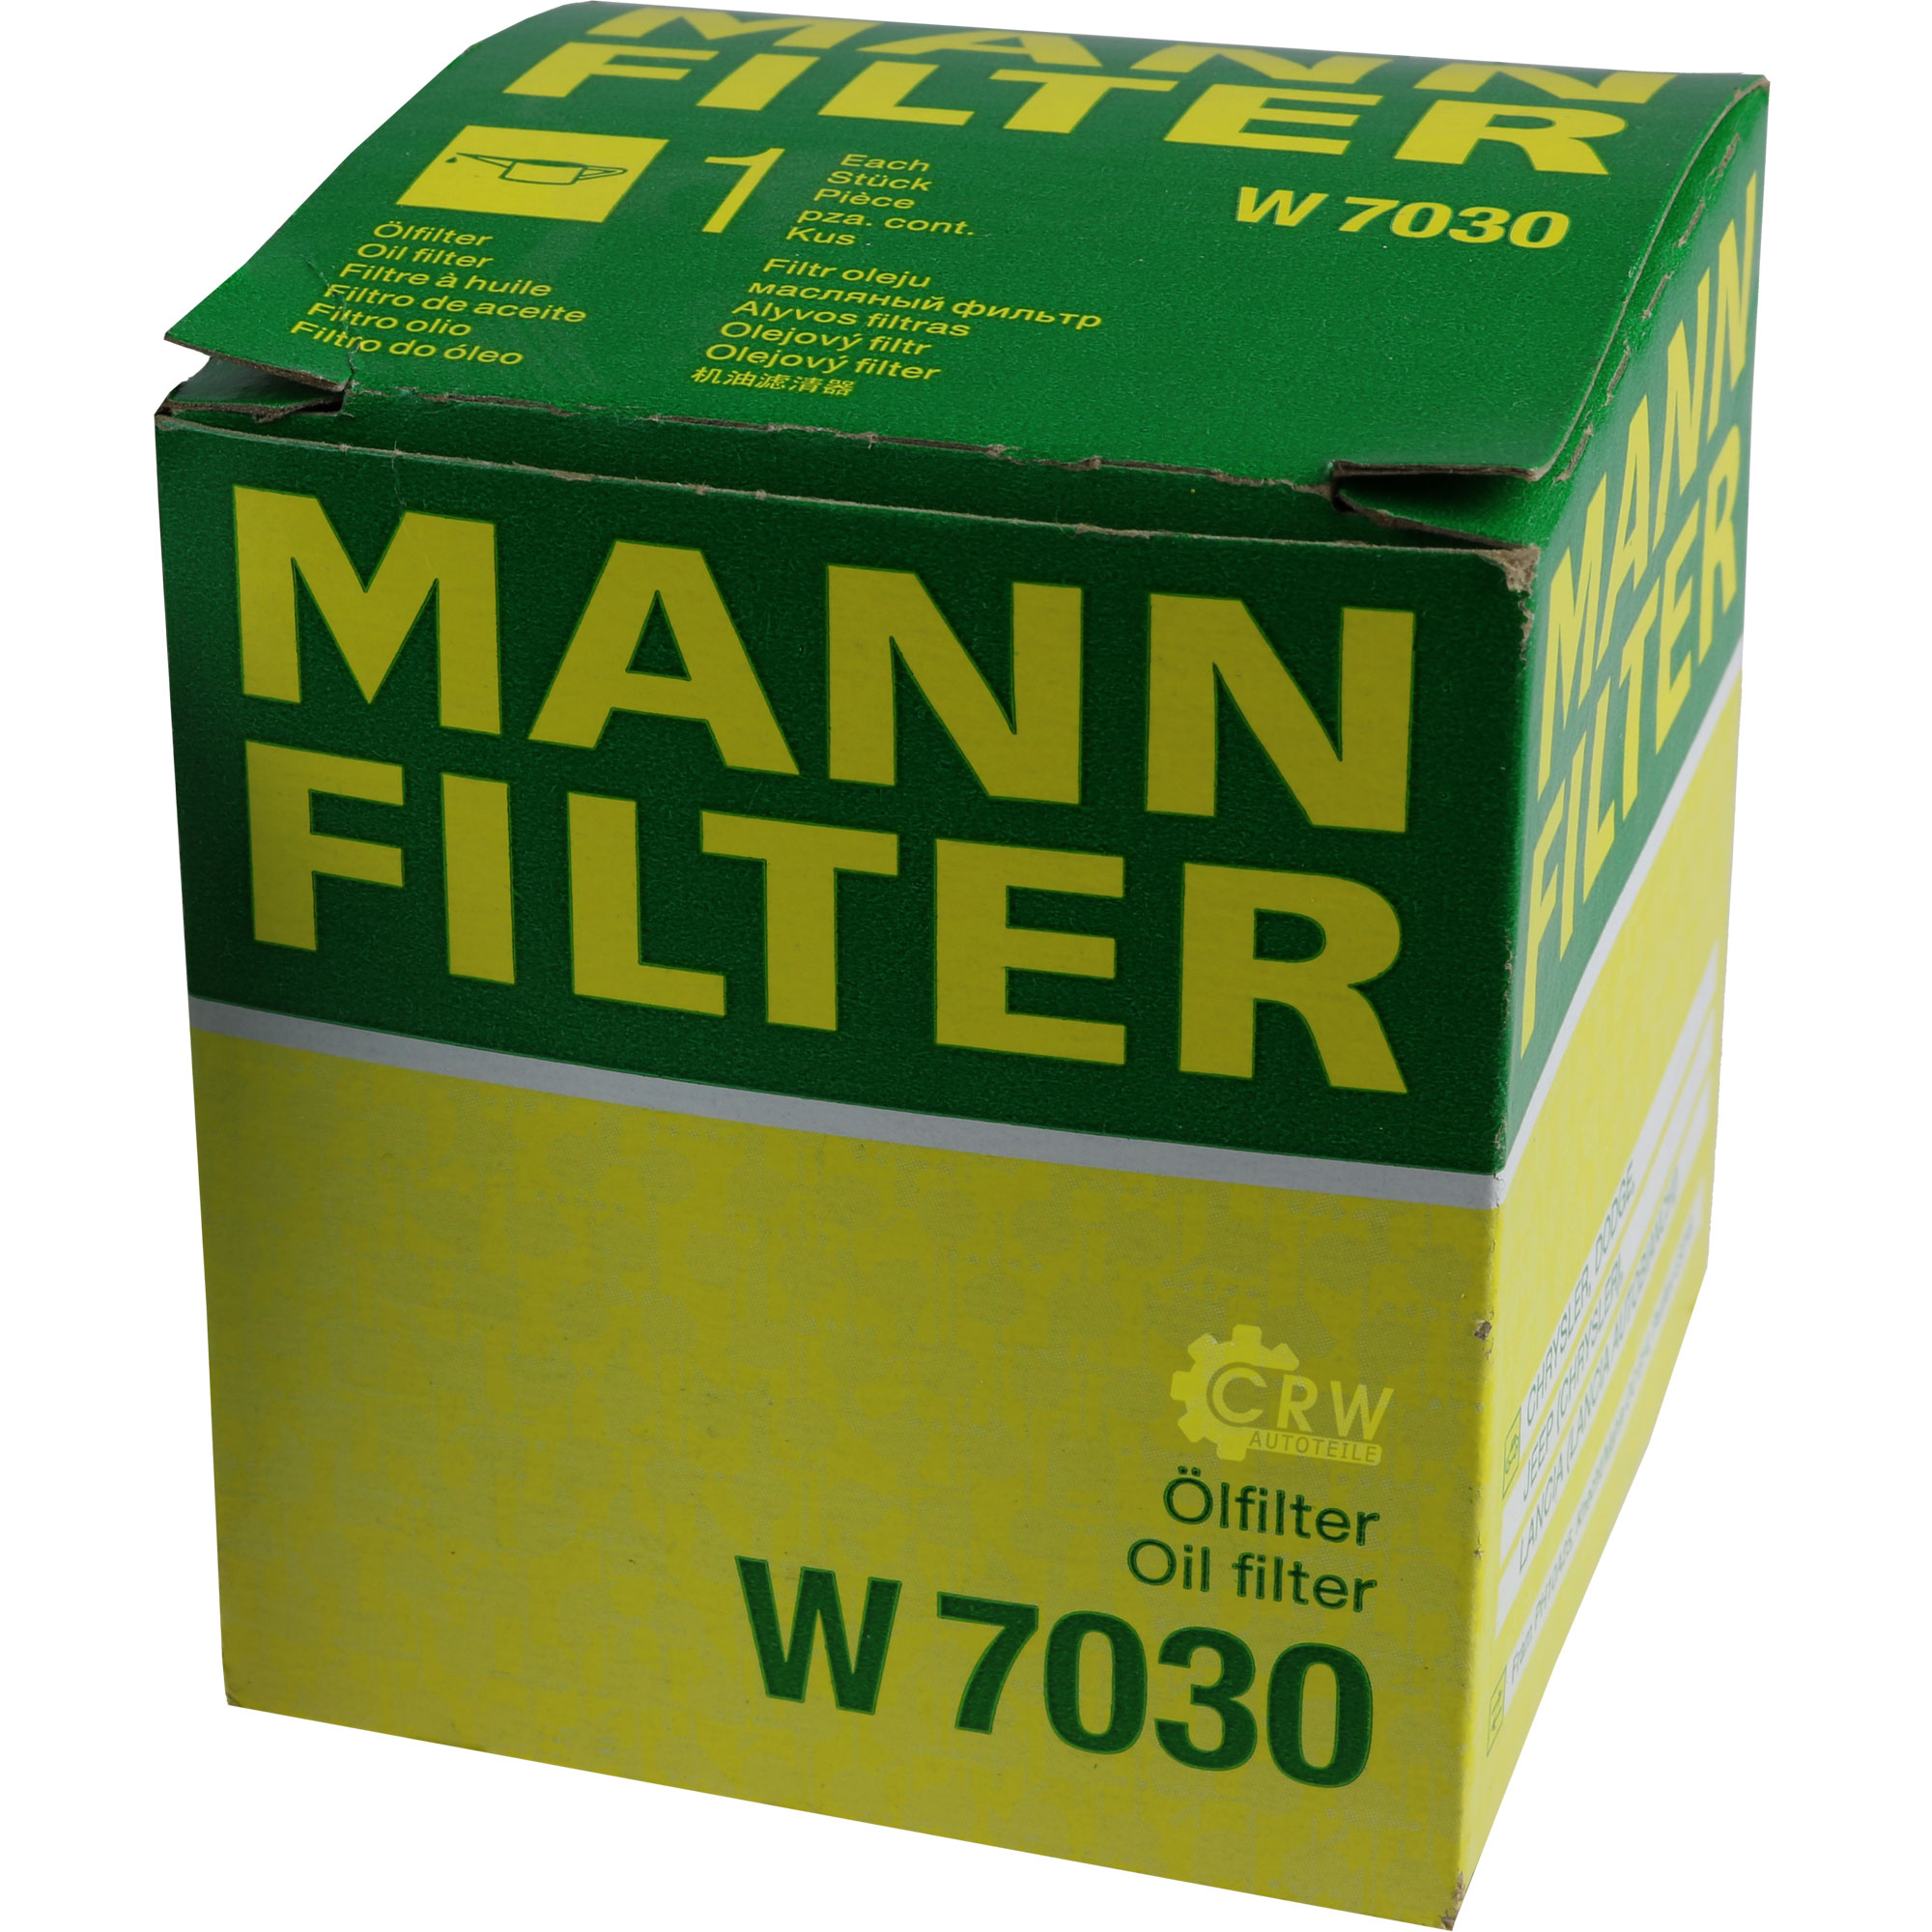 MANN-FILTER Ölfilter W 7030 Oil Filter